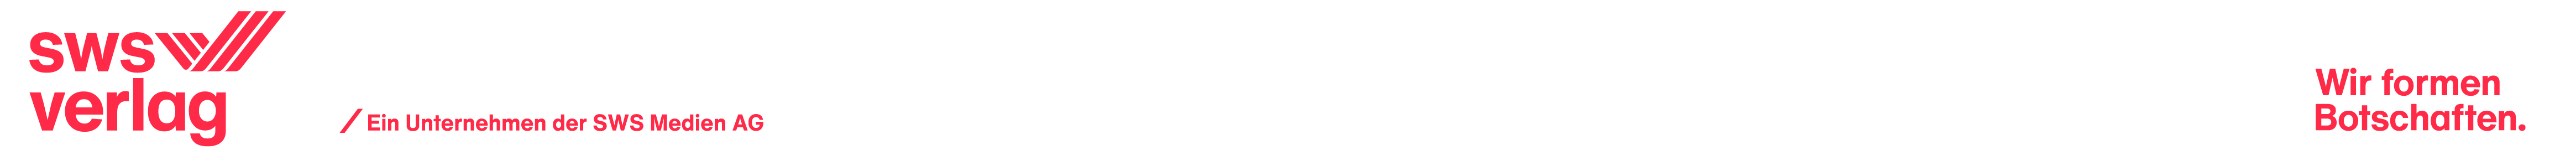 Logo - SWS Verlag